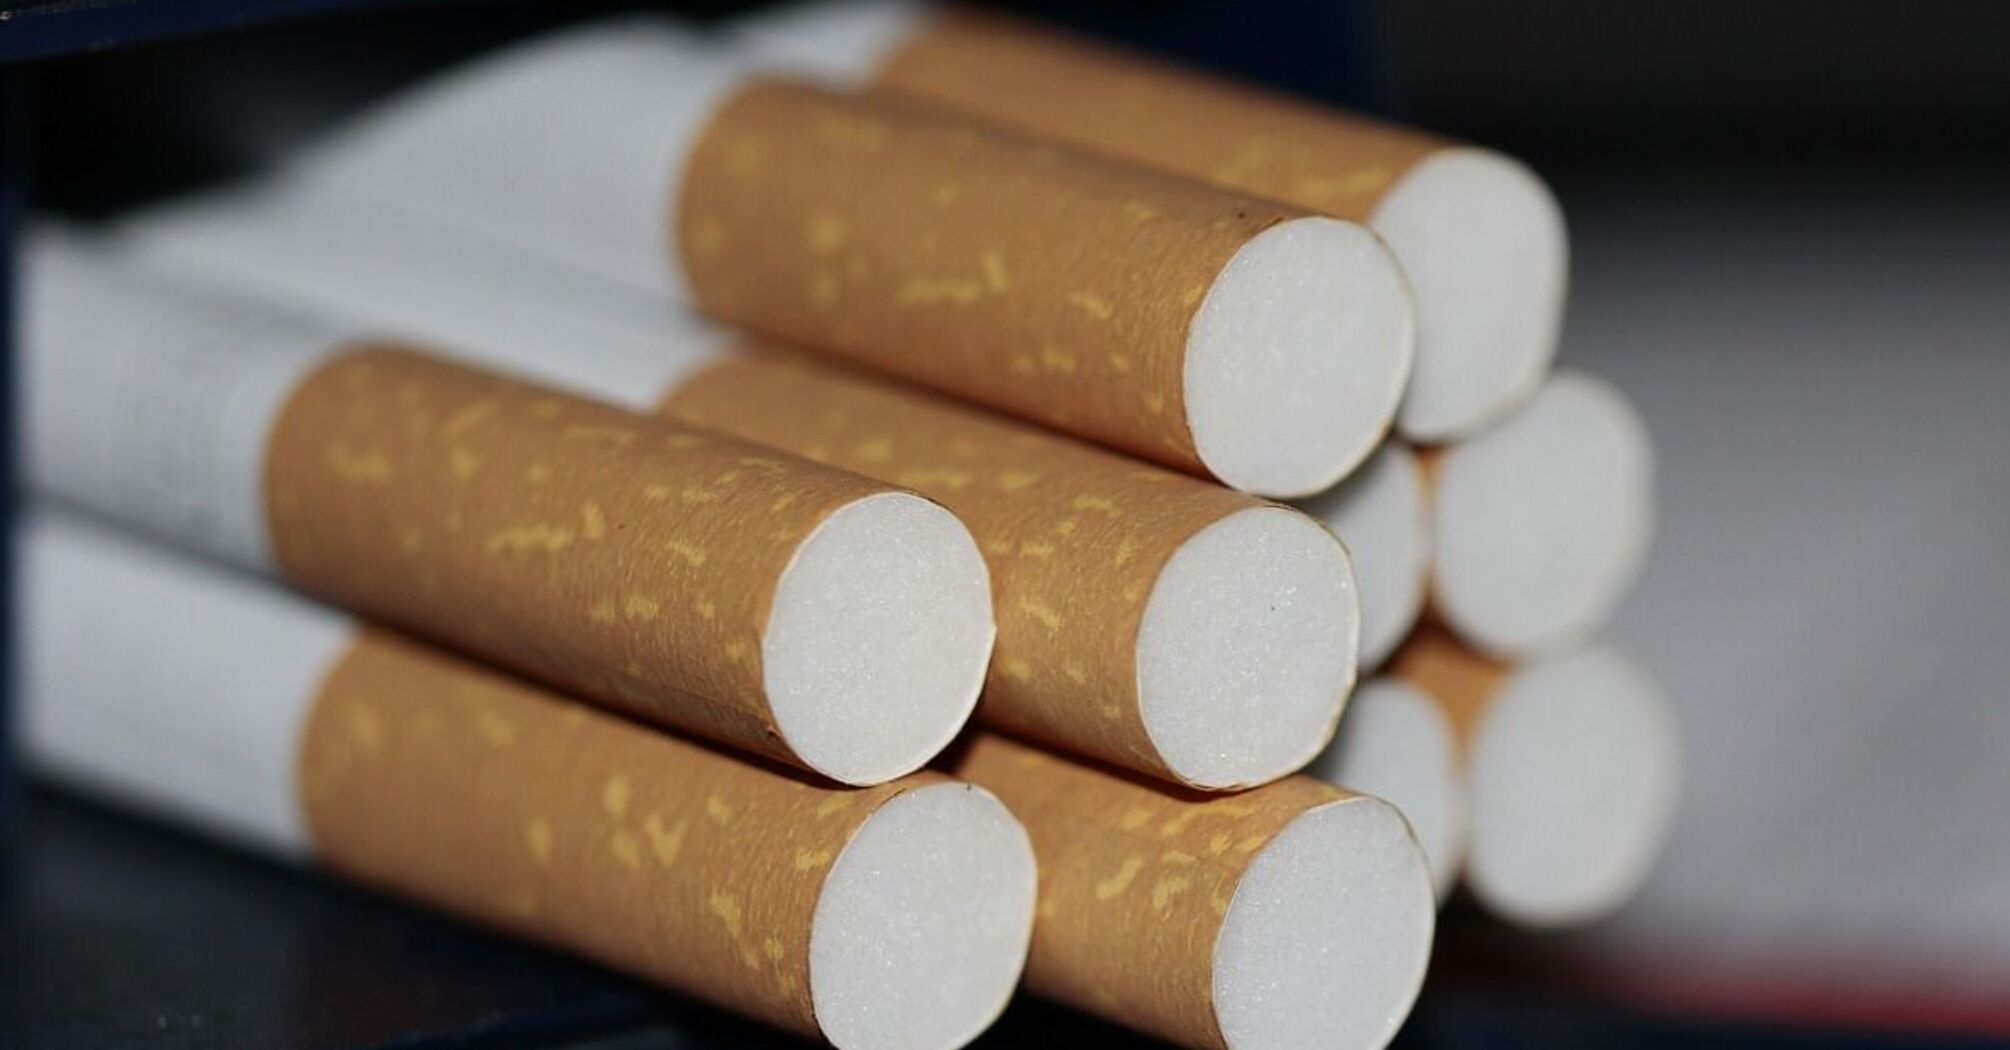 Курить станет дороже: сколько будут стоить сигареты и стики по новым правилам